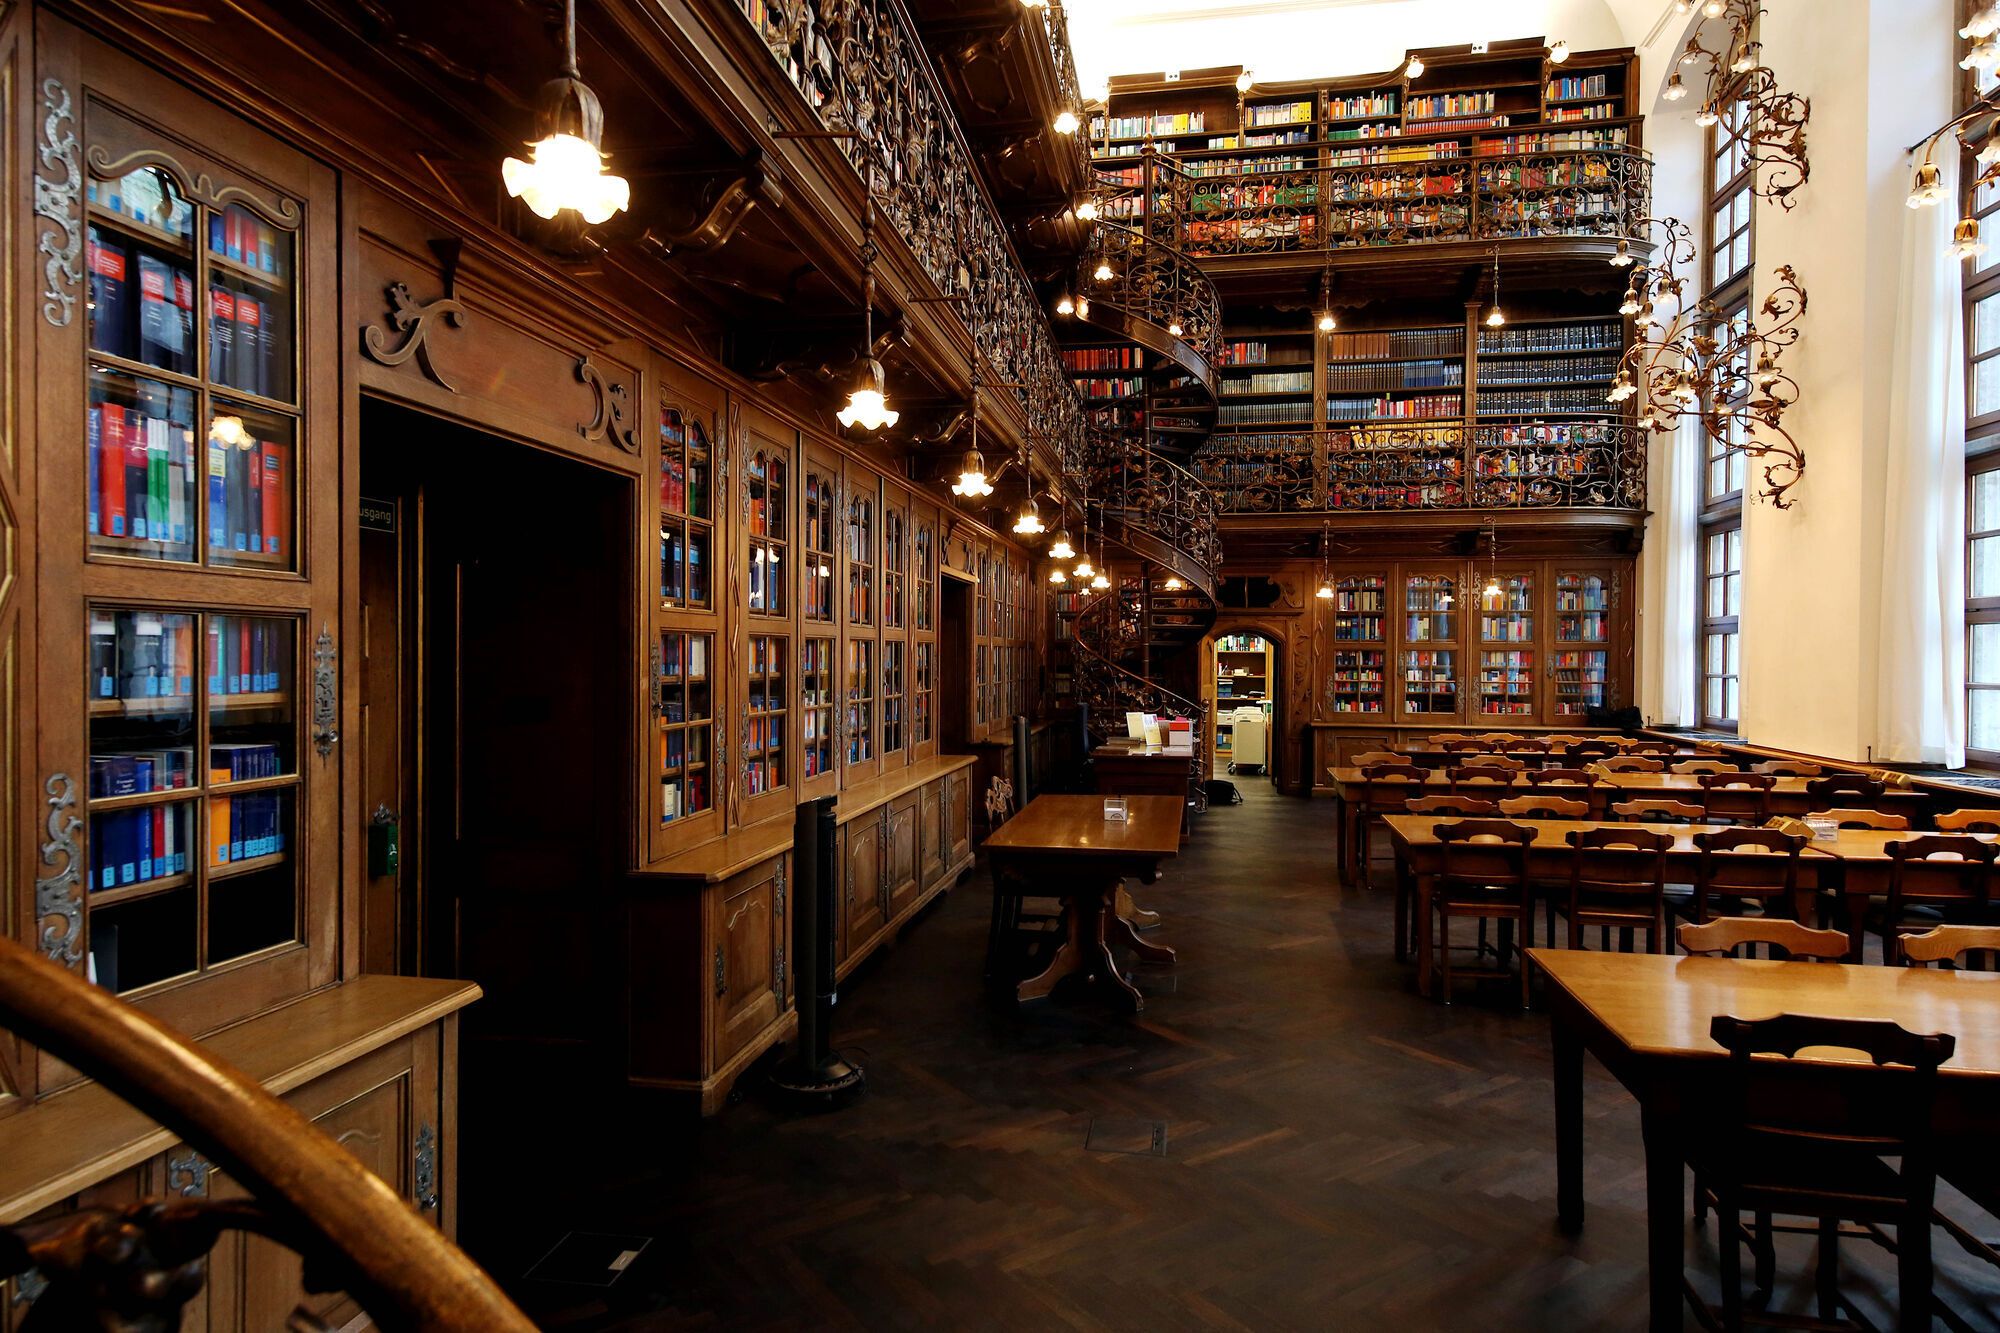 Ubicada en la ciudad de Múnich, esta biblioteca con estilo Art Nouveau es considerada de las más bonitas del mundo